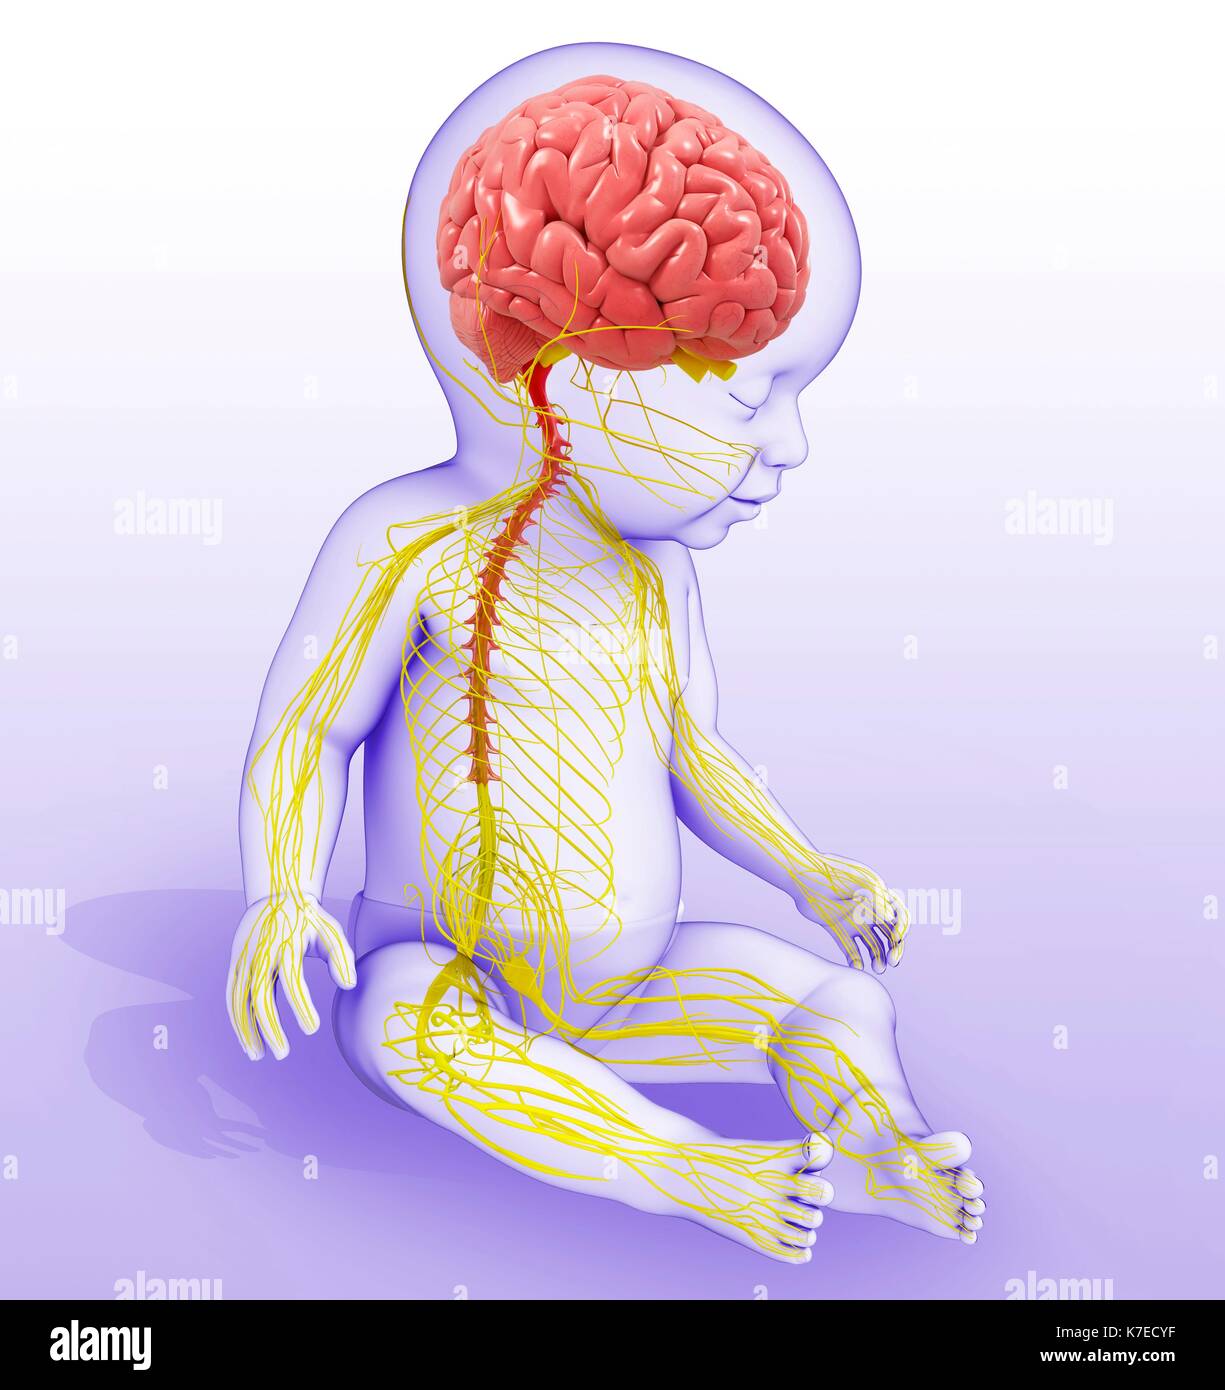 Поражение мозга у новорожденных. Нервная система ребенка. Нервная система новорожденного ребенка. Центральная нервная система ребенка. Спинной мозг ребенка и взрослого.